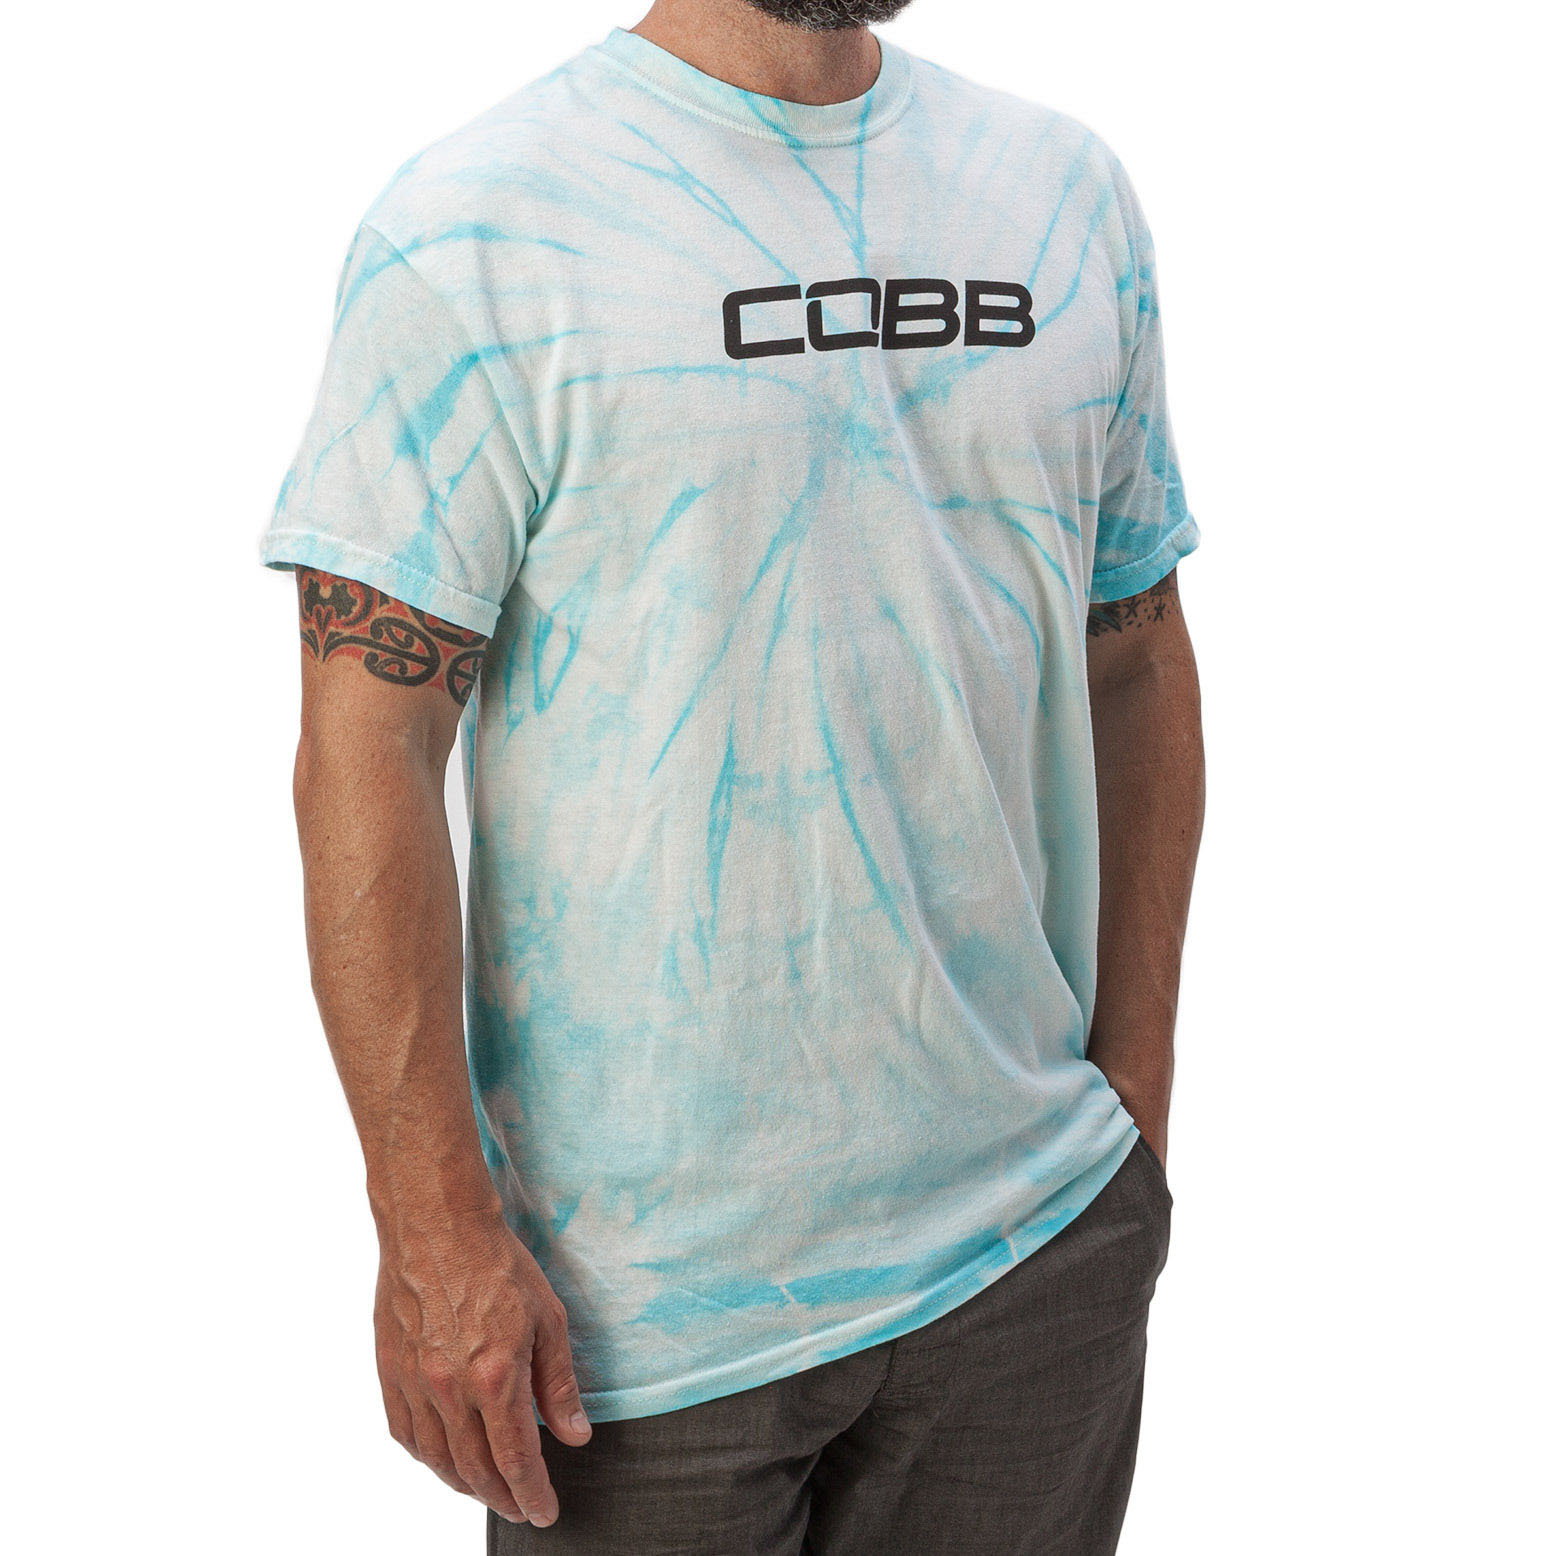 COBB 2021 Summer Tie-Dye Shirt Cyan